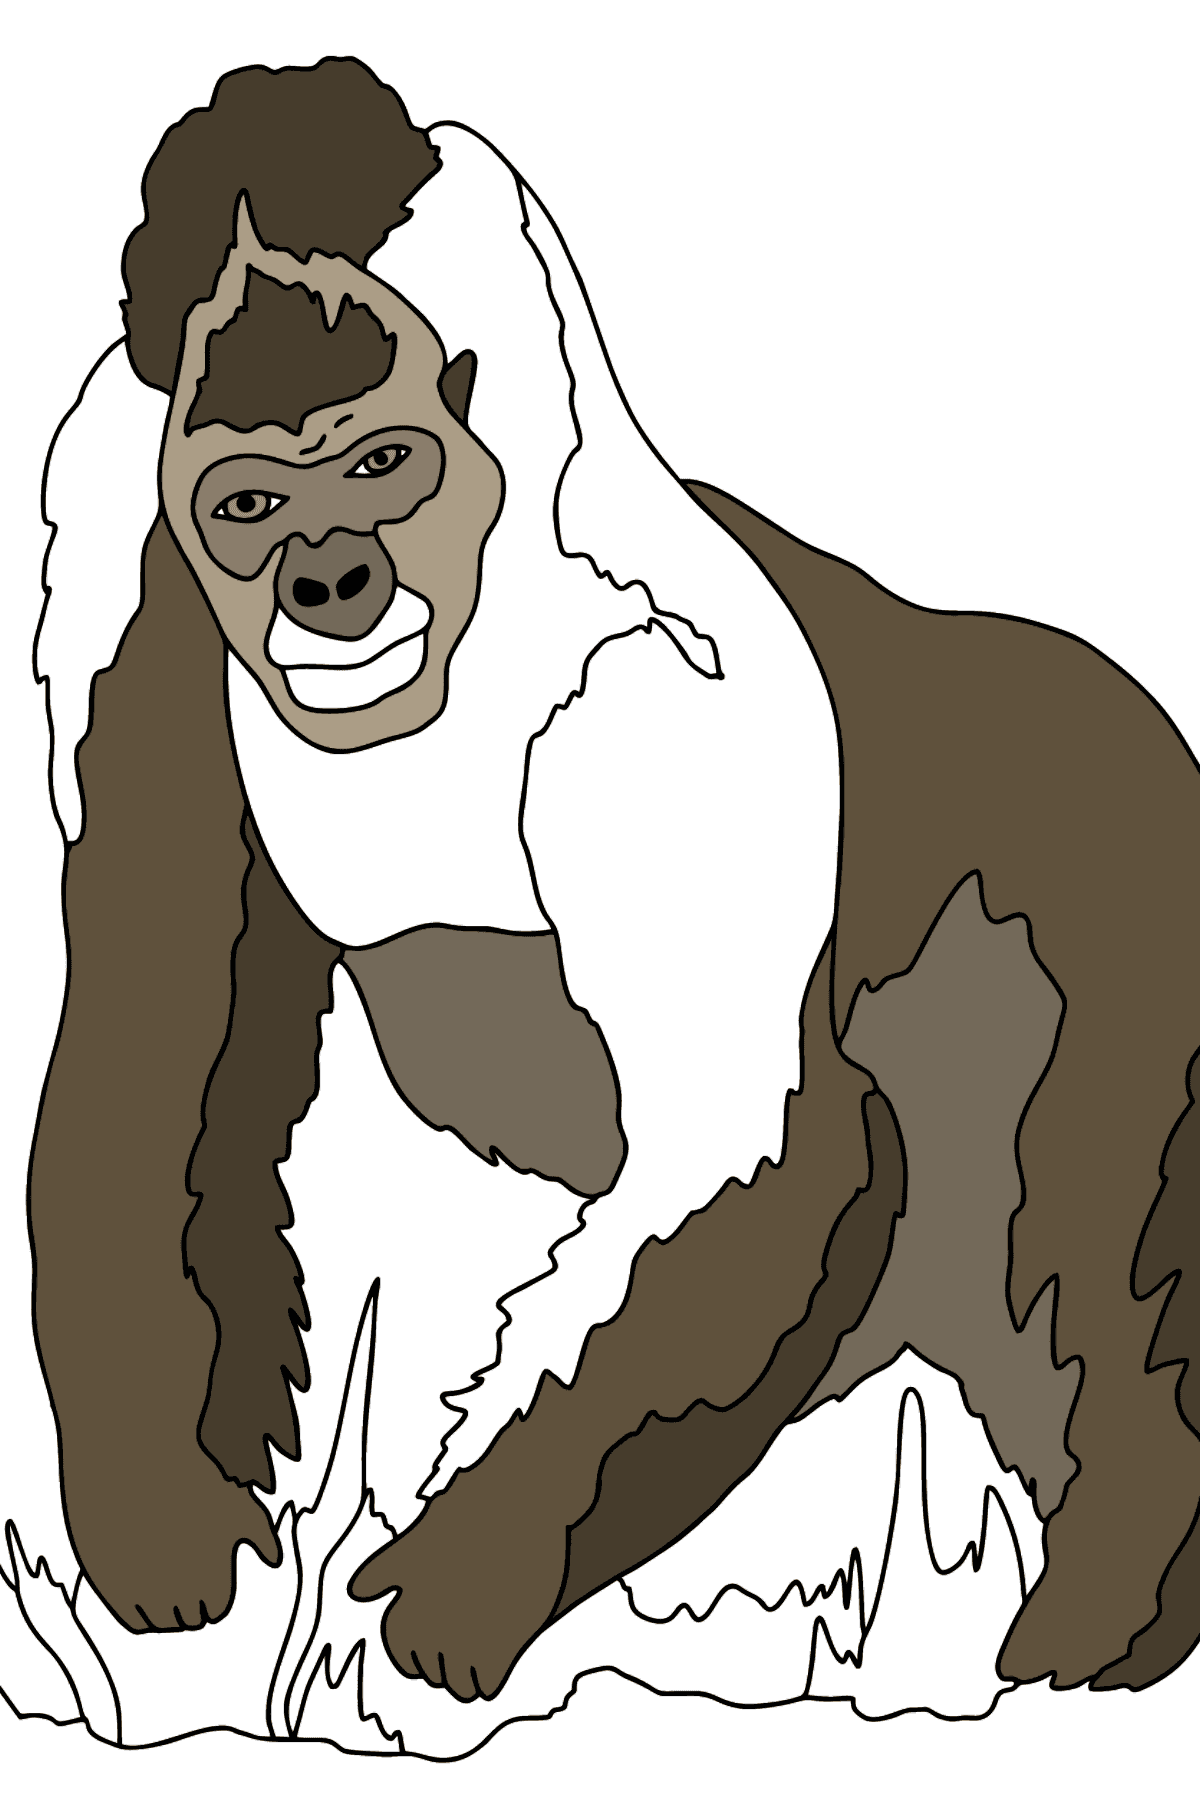 Dibujo para Colorear - Un Gorila Peludo - Dibujos para Colorear para Niños